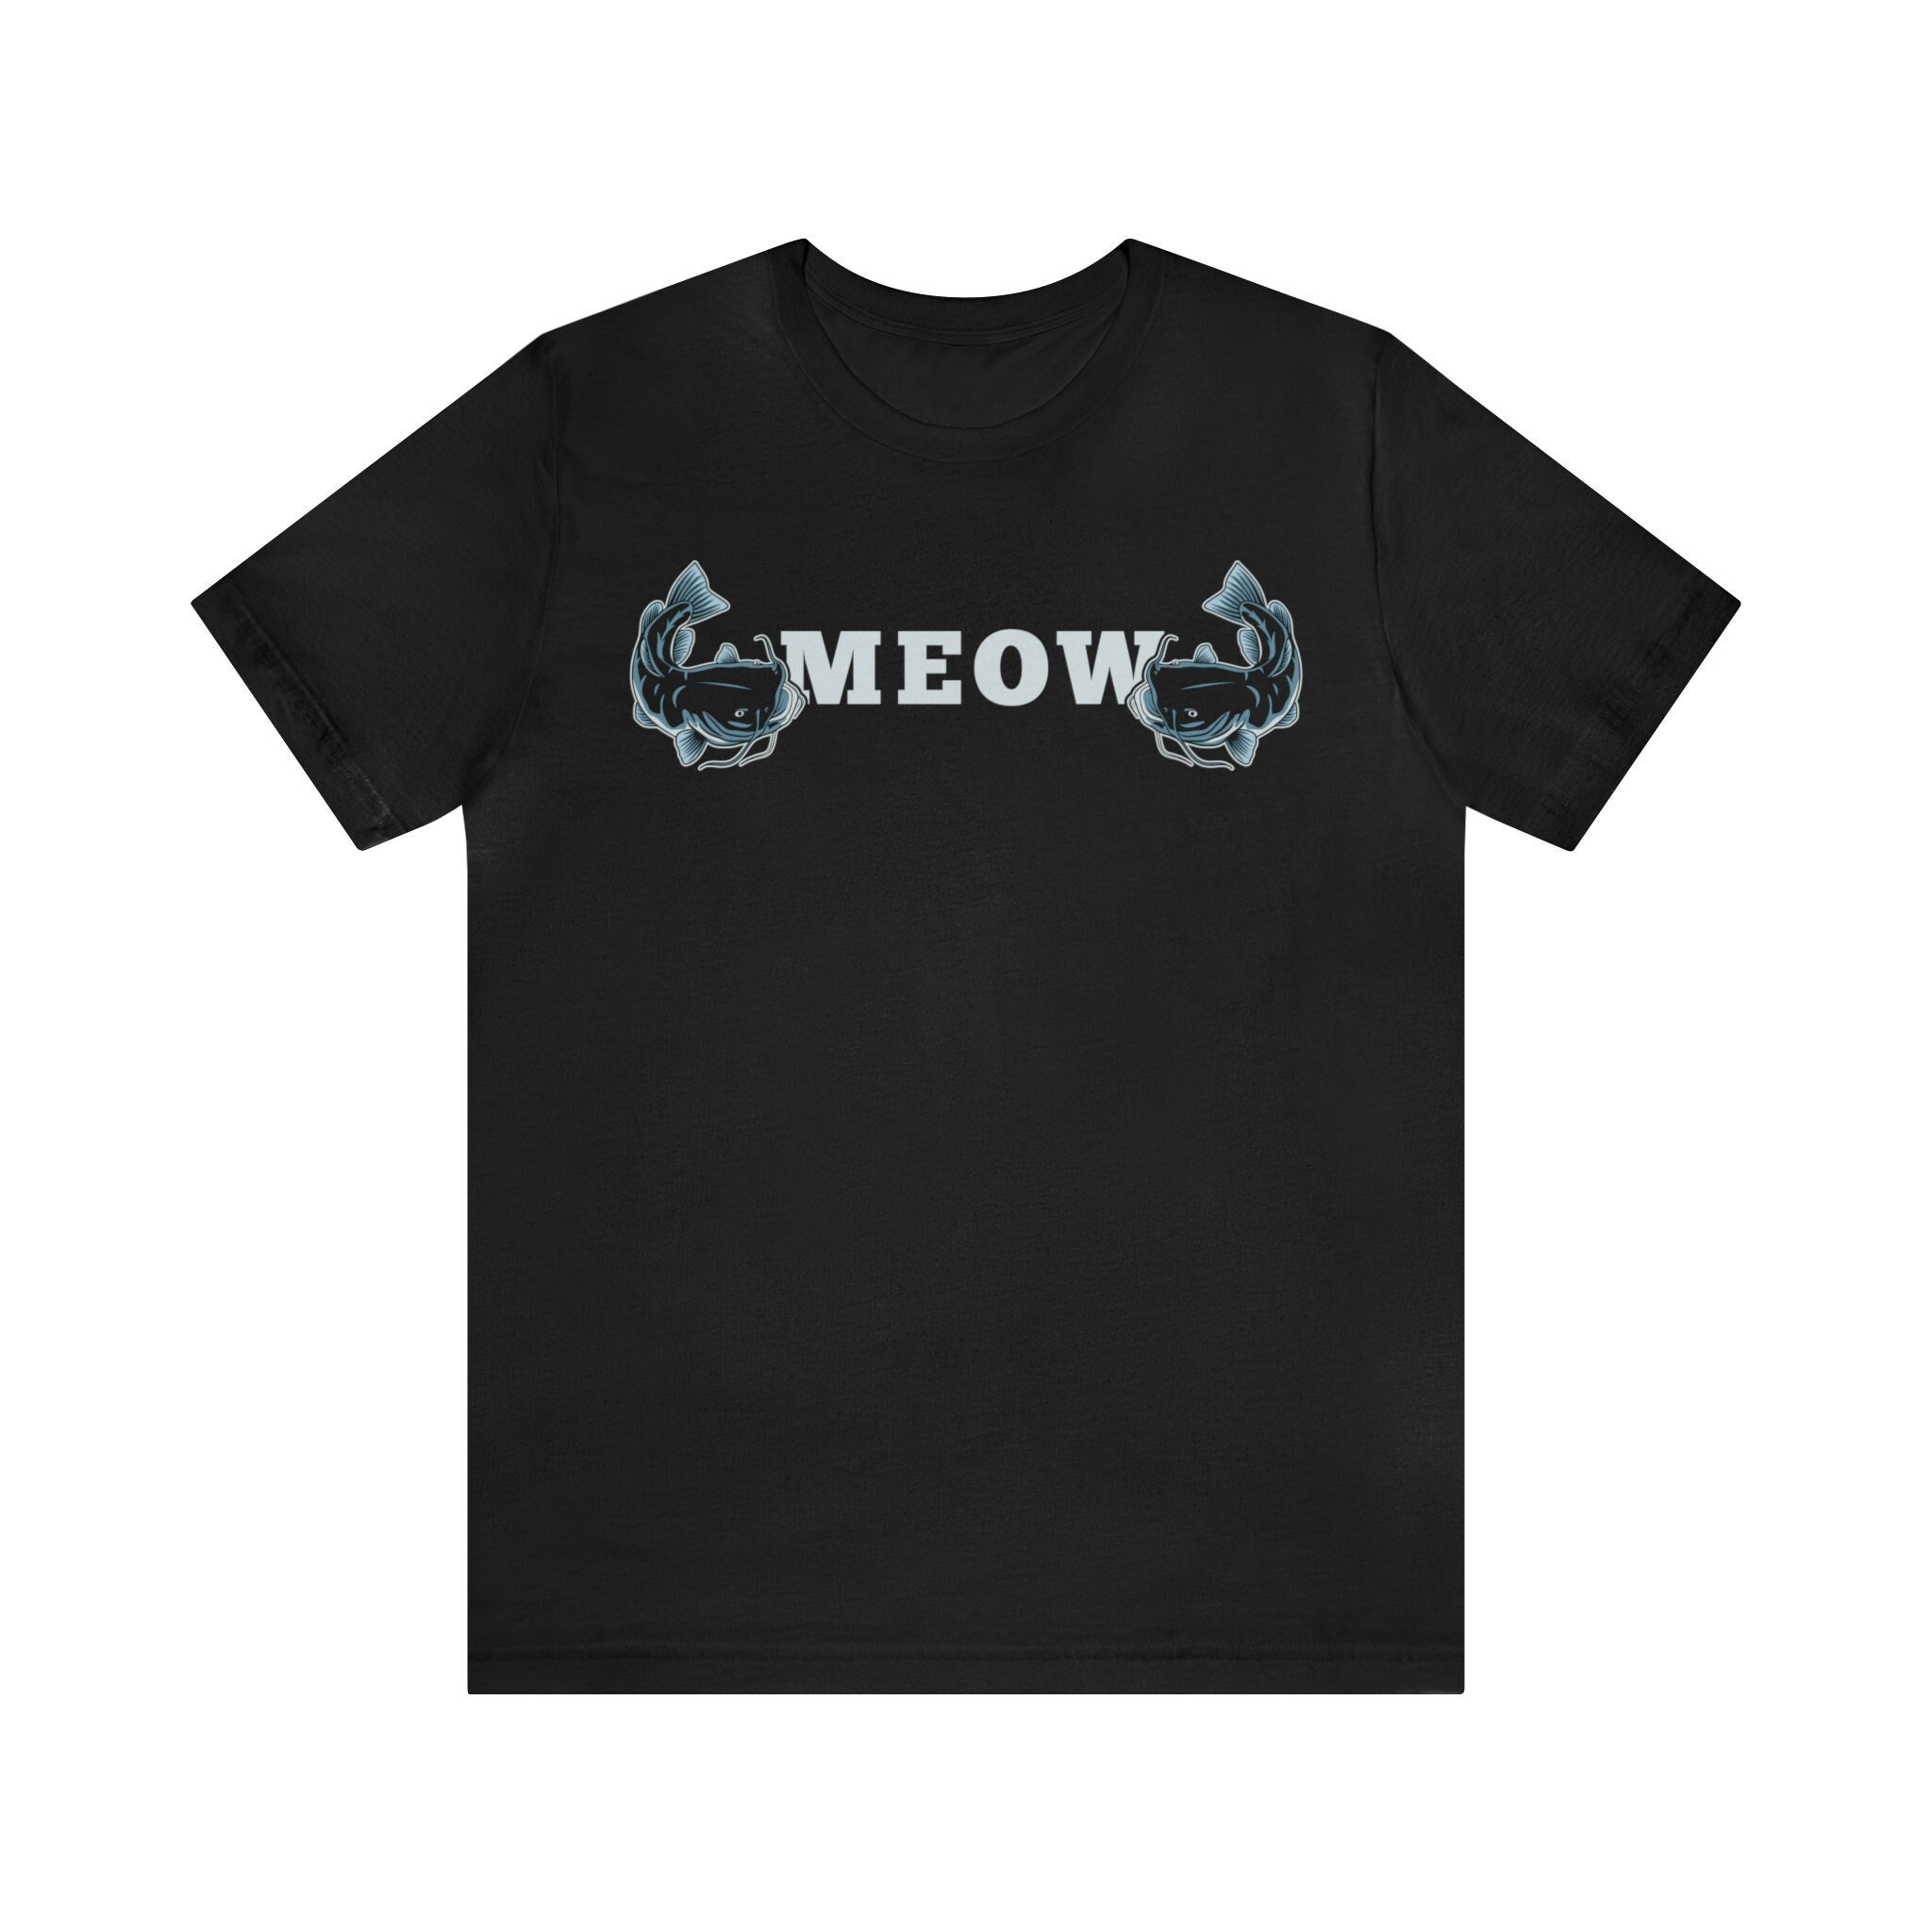 Catfish Gift / Funny Catfishing Shirt for Him & Her / Fisherman T-shirt /  Catfish Fishing Present / Fish Fan Tshirt / Catfish Tee Shirts 